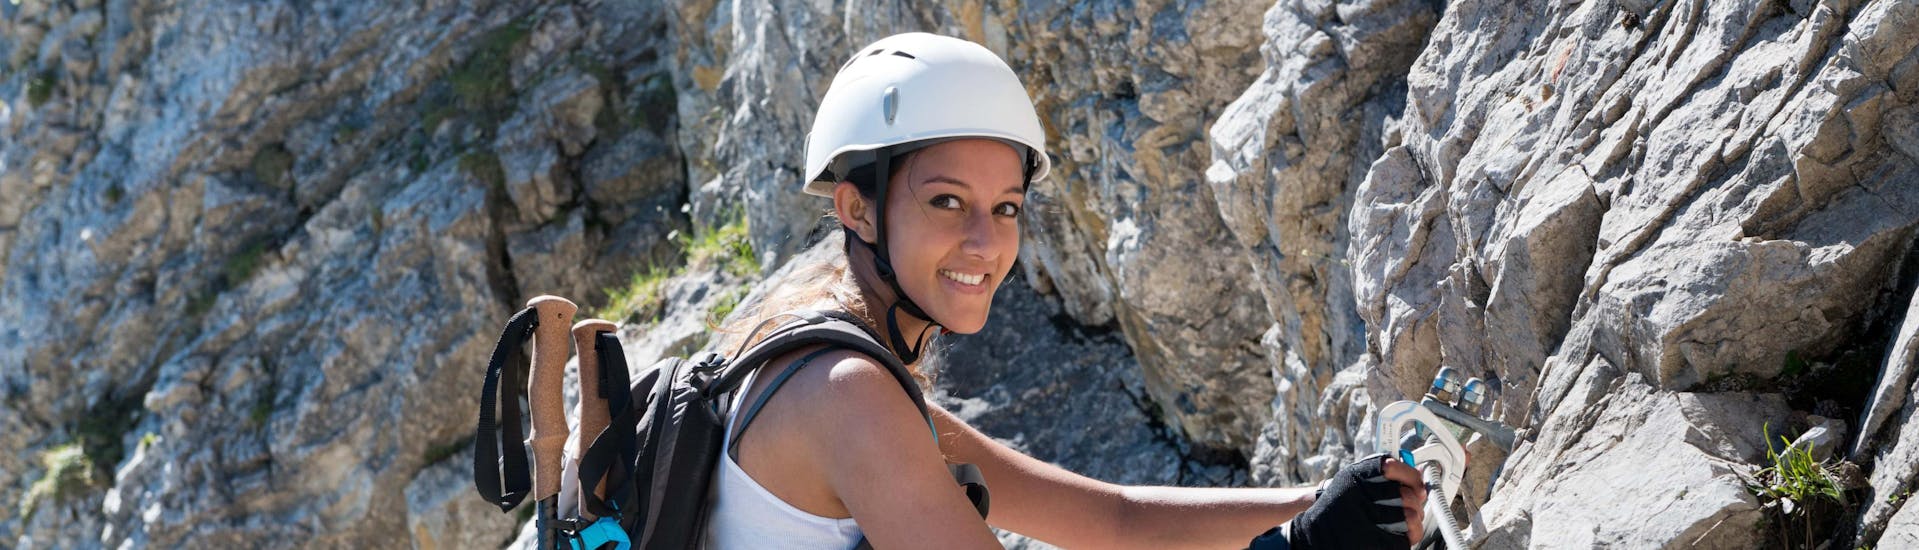 Eine junge Frau bei einer Via Ferrata Tour im Klettersteig Hotspot Aragonien.